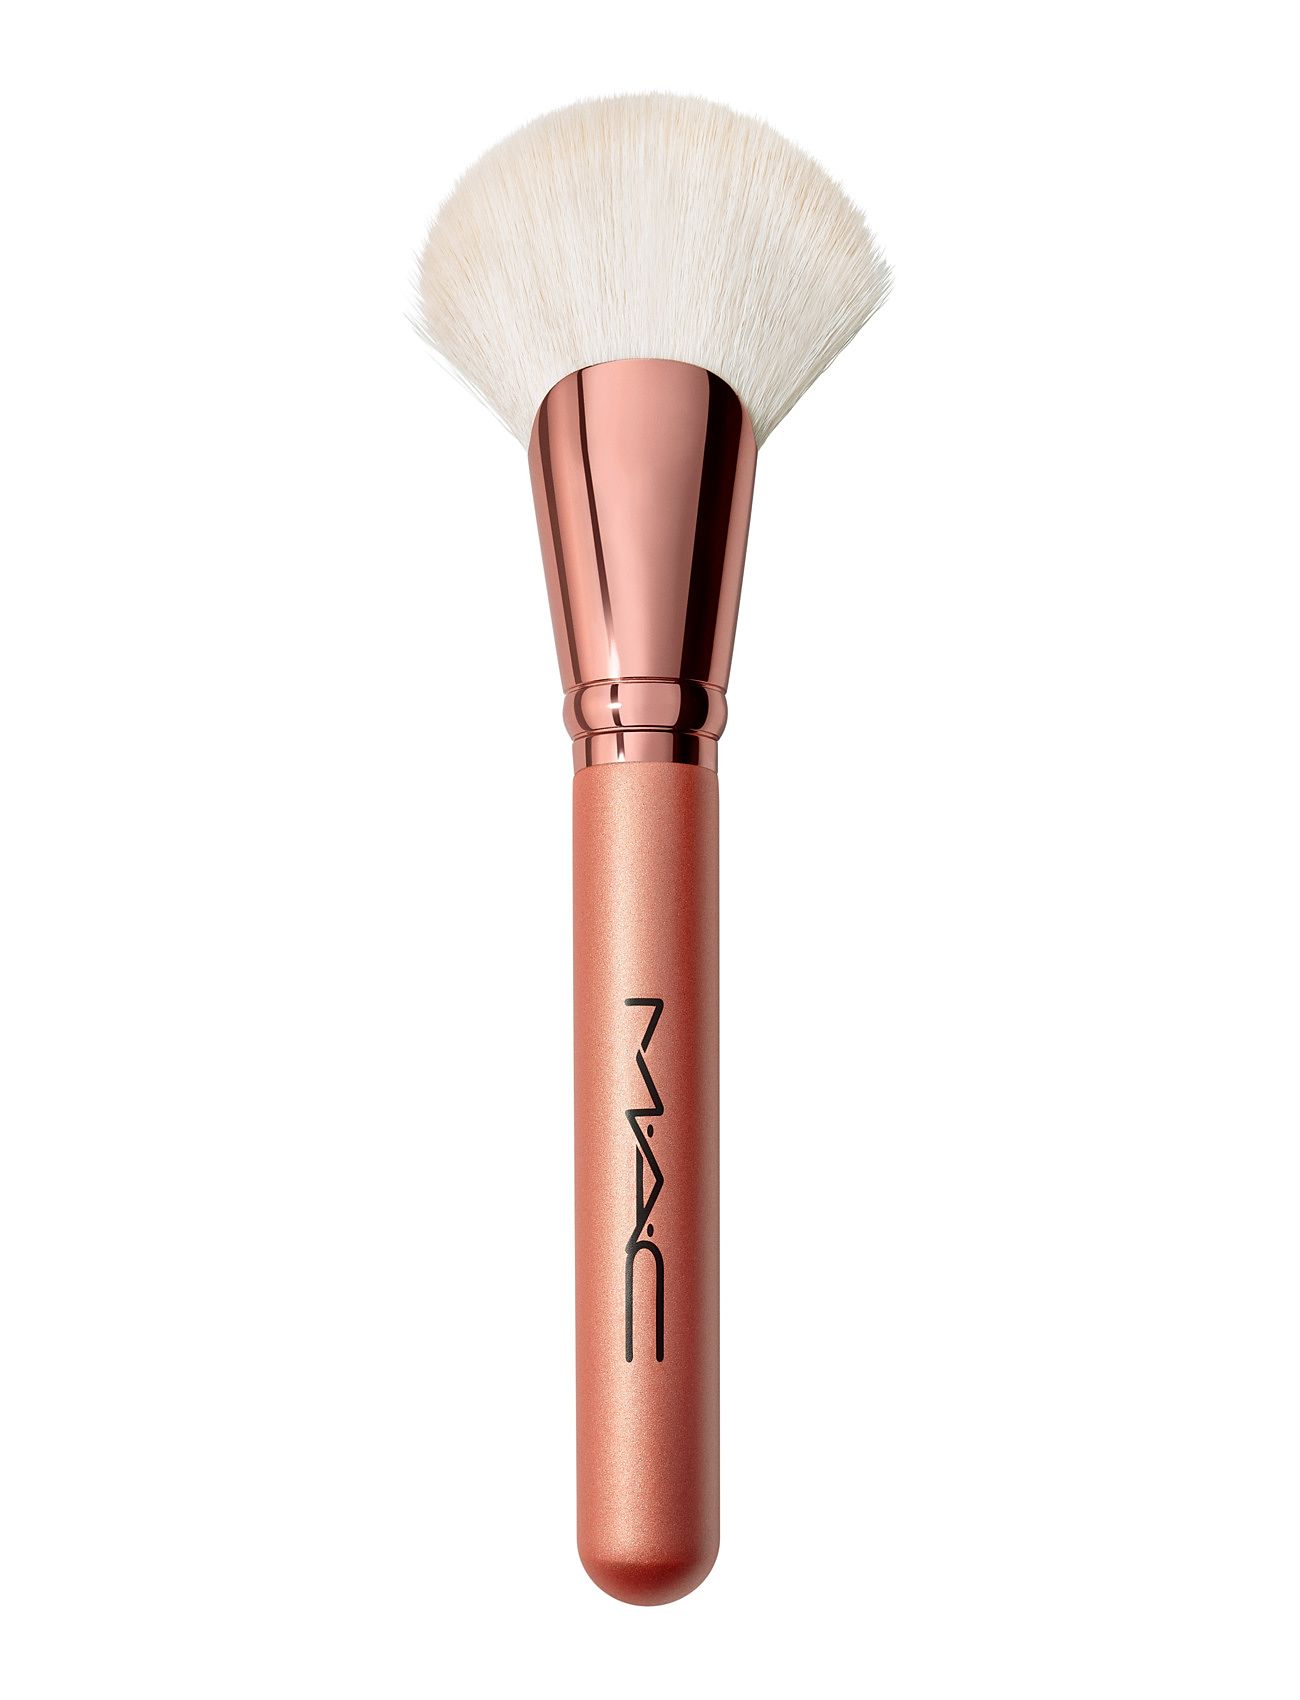 Brushes - 143S Bronzer Fan Brush Beauty Women Makeup Makeup Brushes Face Brushes Highlight Brushes Nude MAC